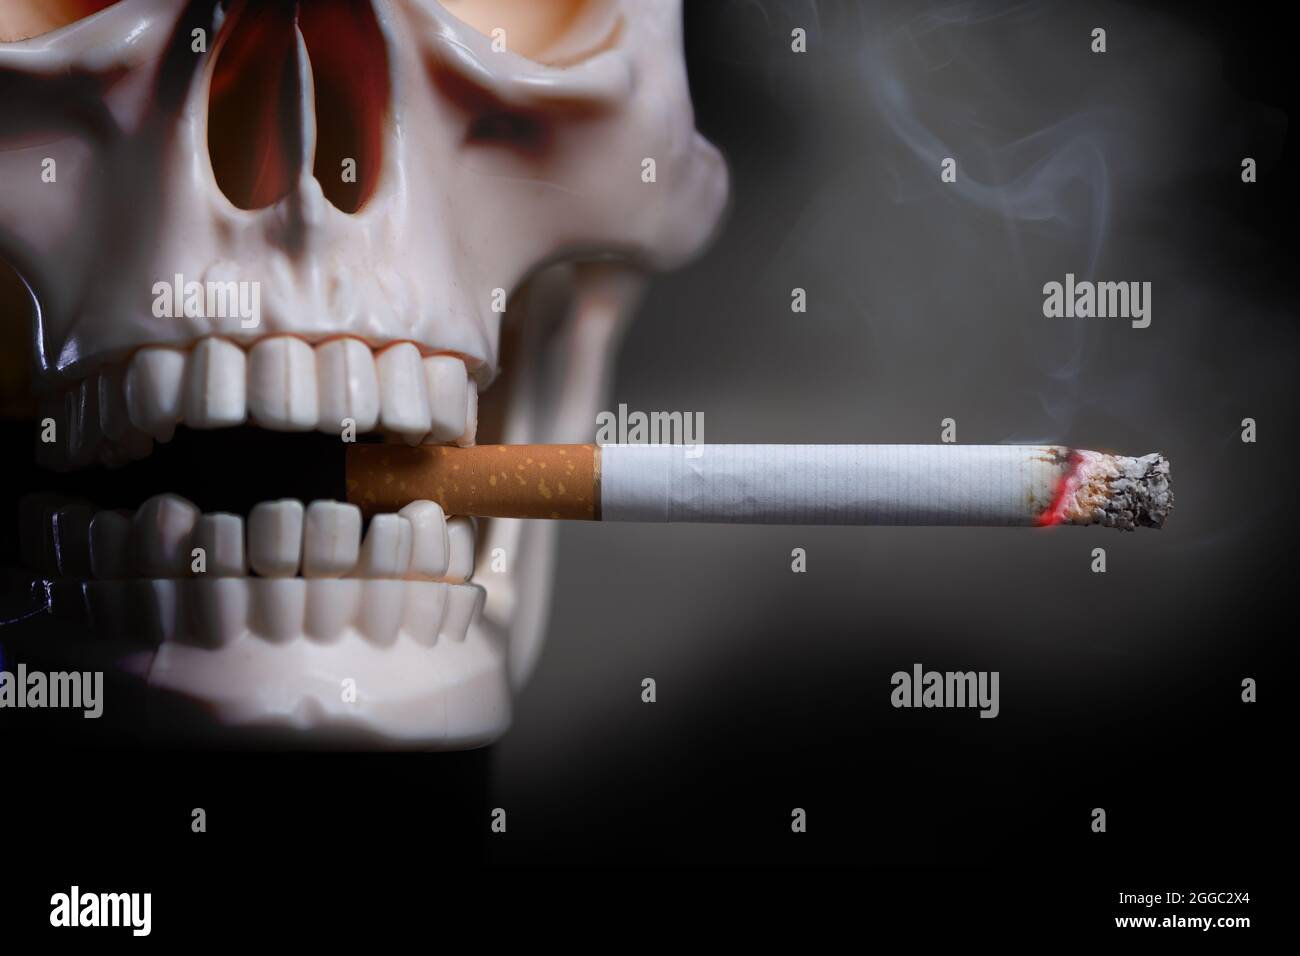 Le crâne humain fume une cigarette sur fond noir. Modèle de crâne humain en plastique avec cigarette allumée dans les dents Banque D'Images